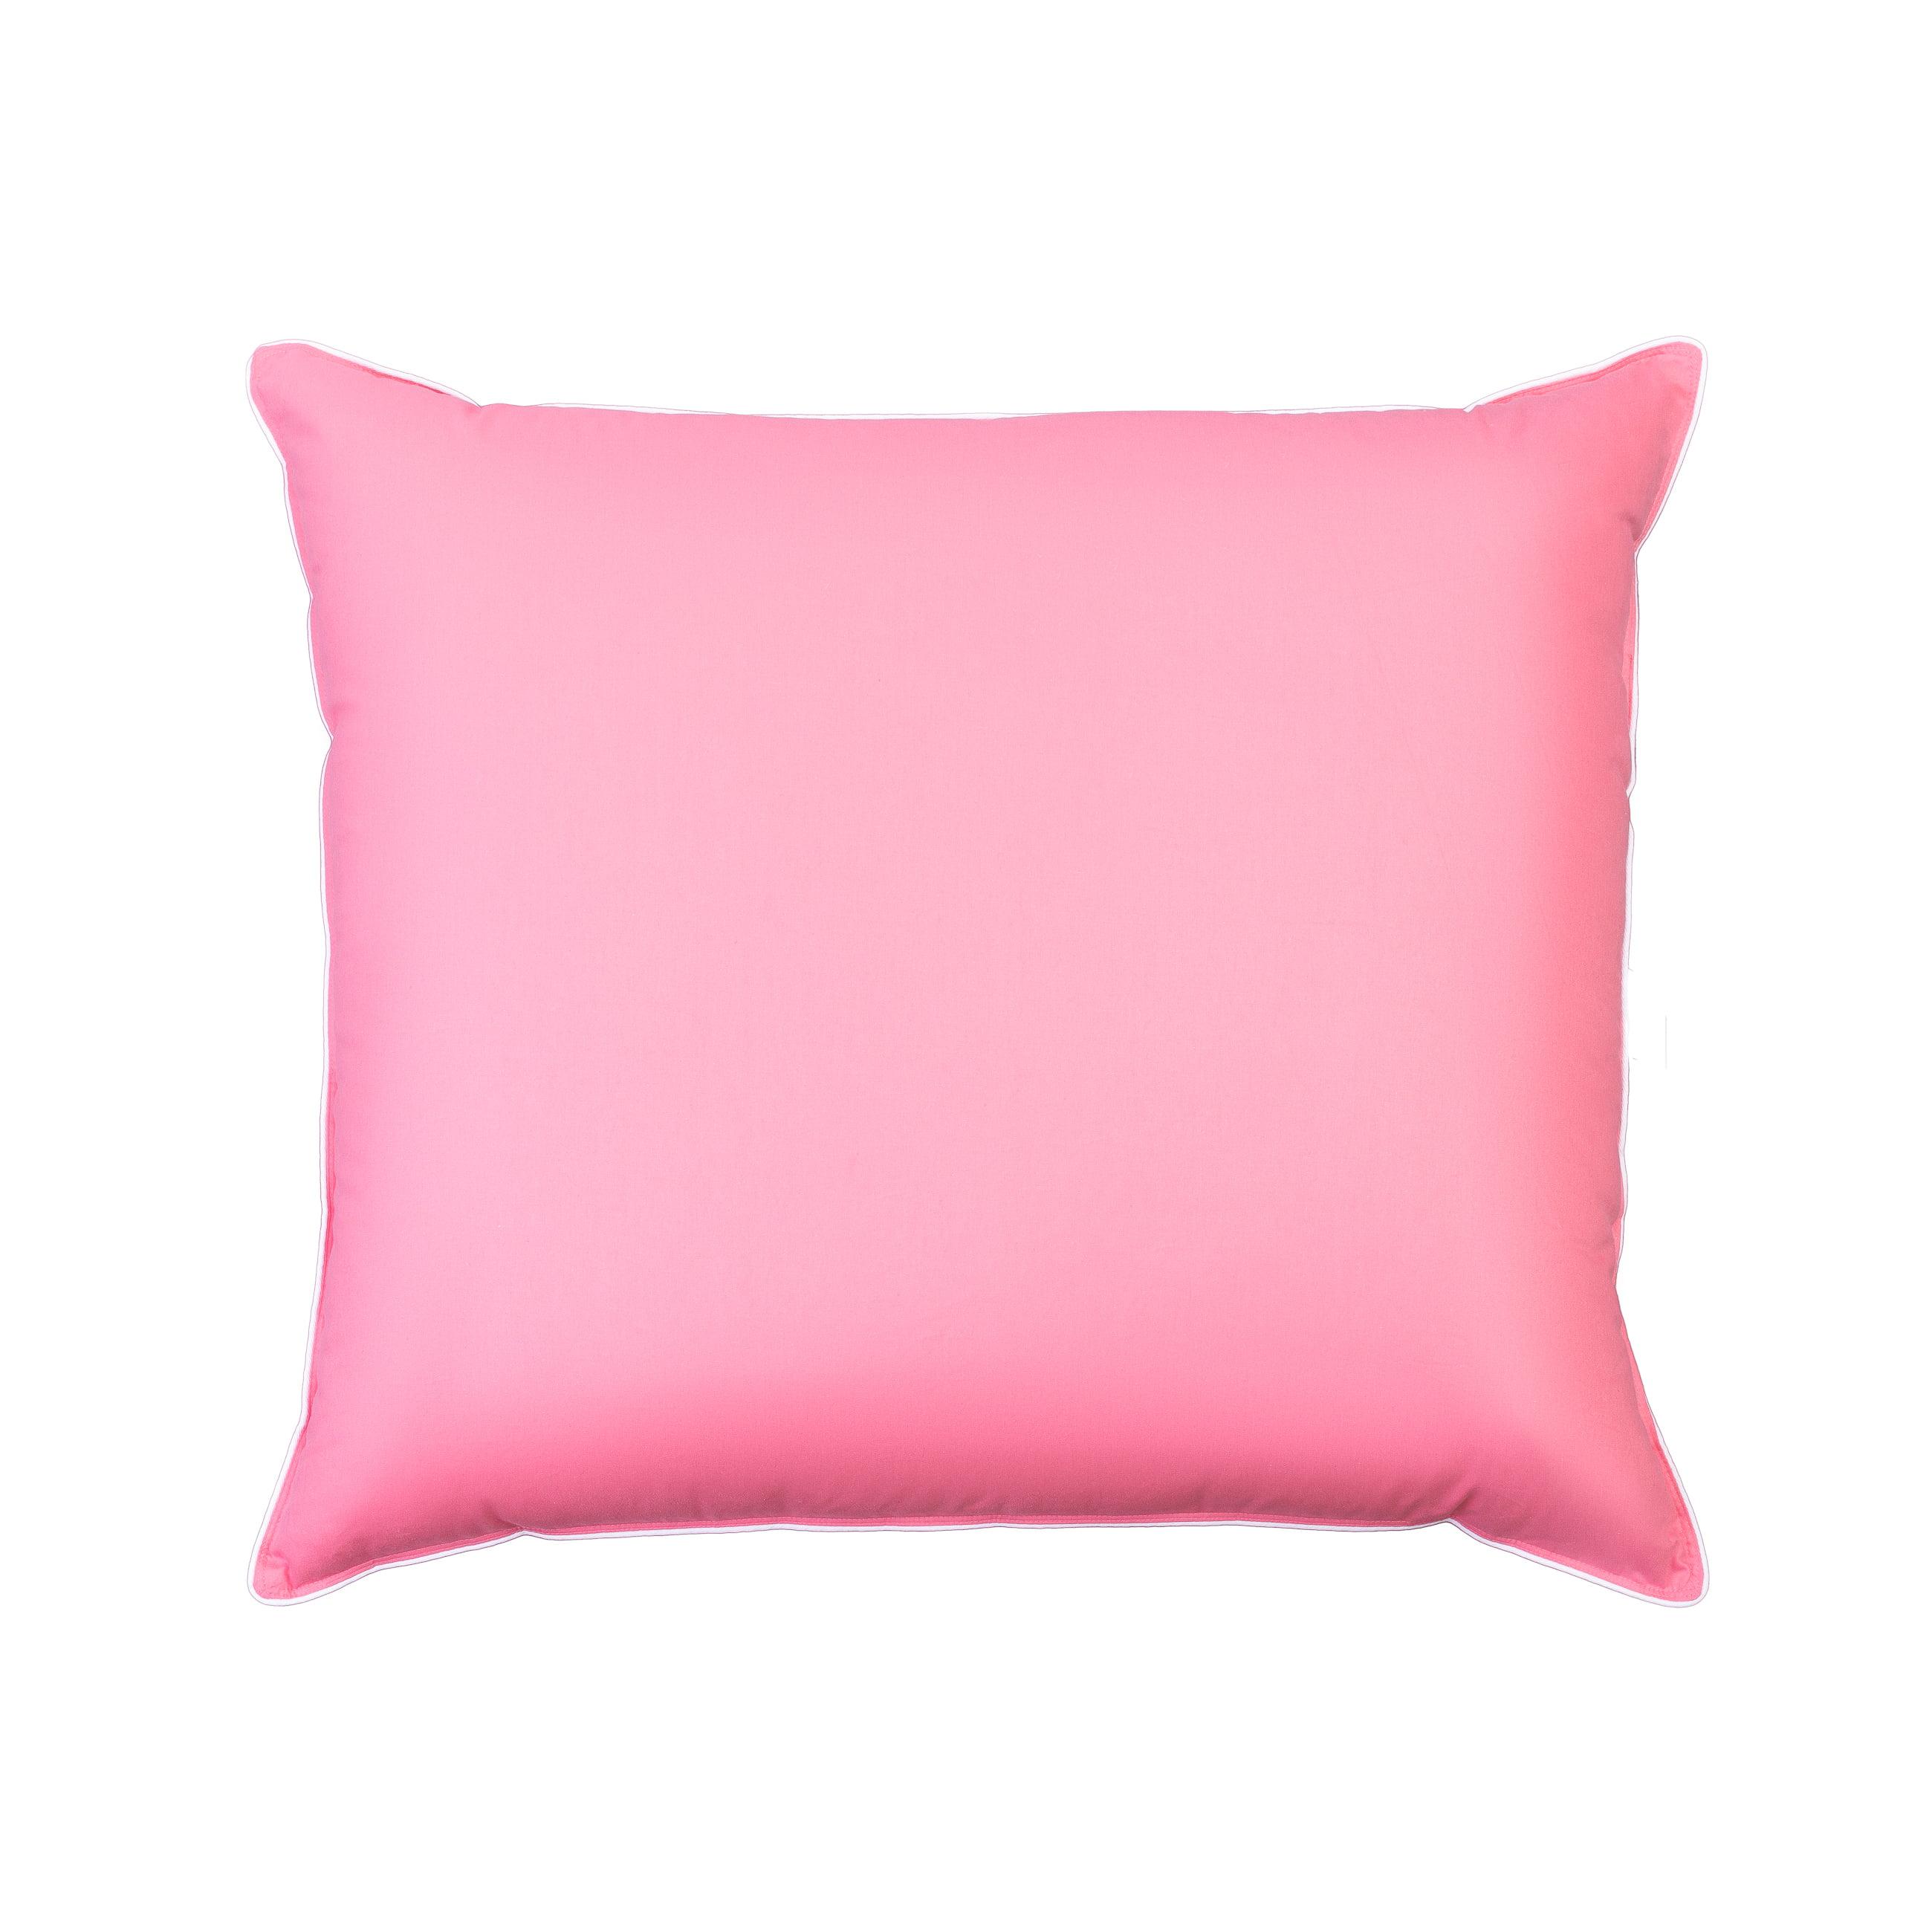 Zdjęcie typu packshot różowej poduszki puchowej